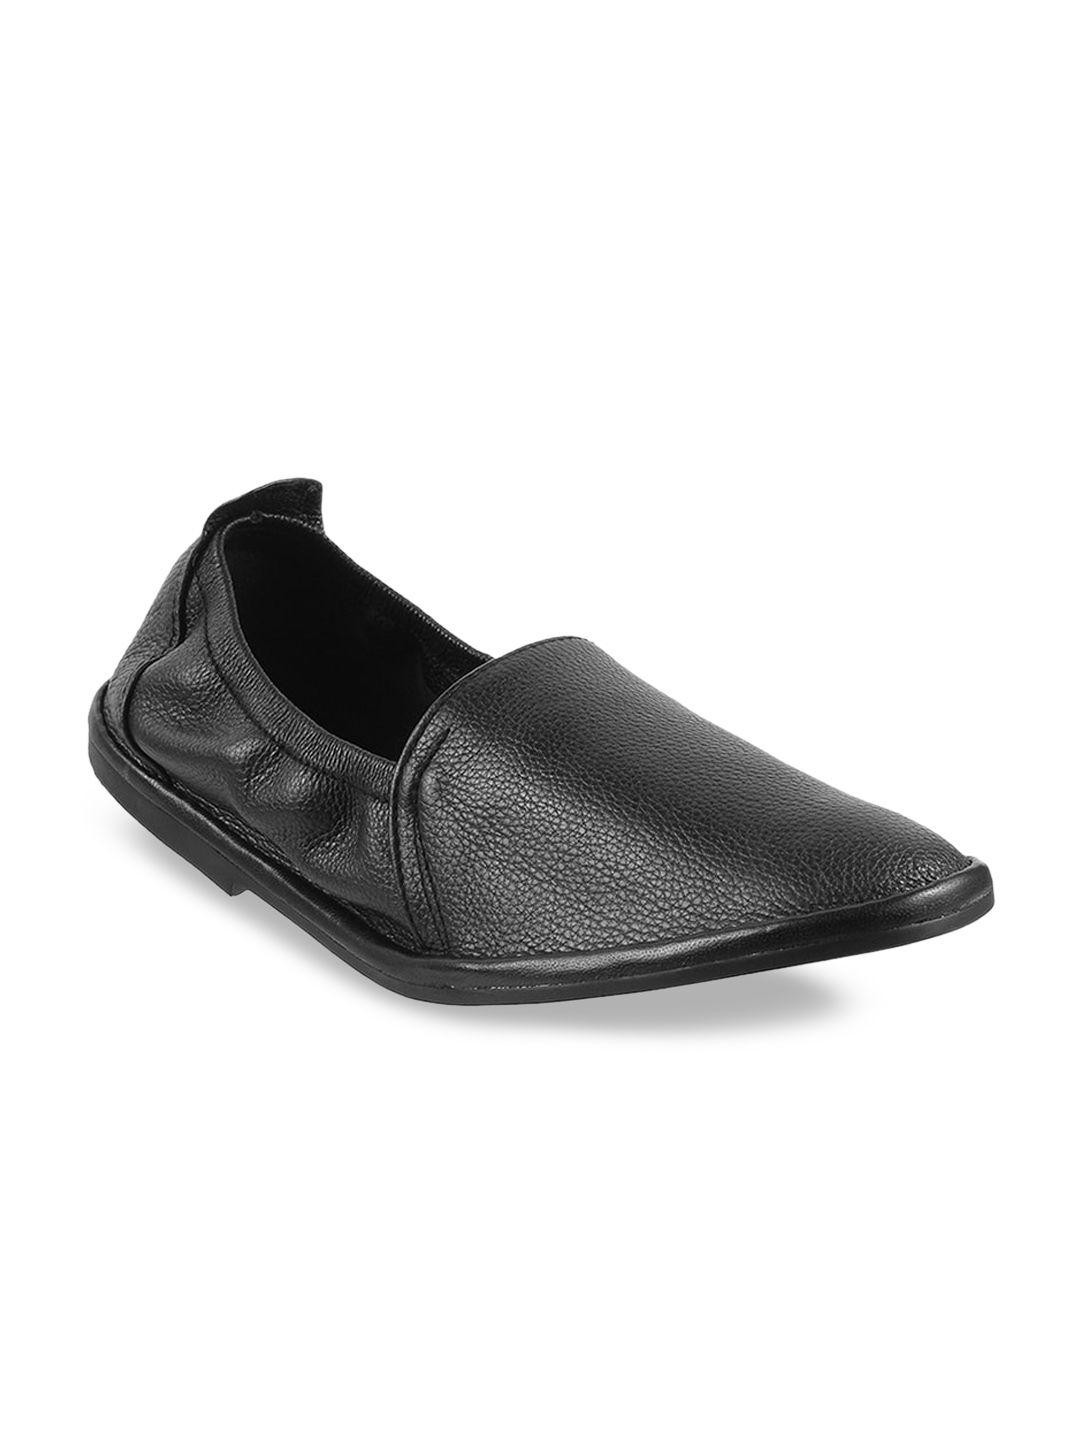 mochi men black solid formal loafers shoes